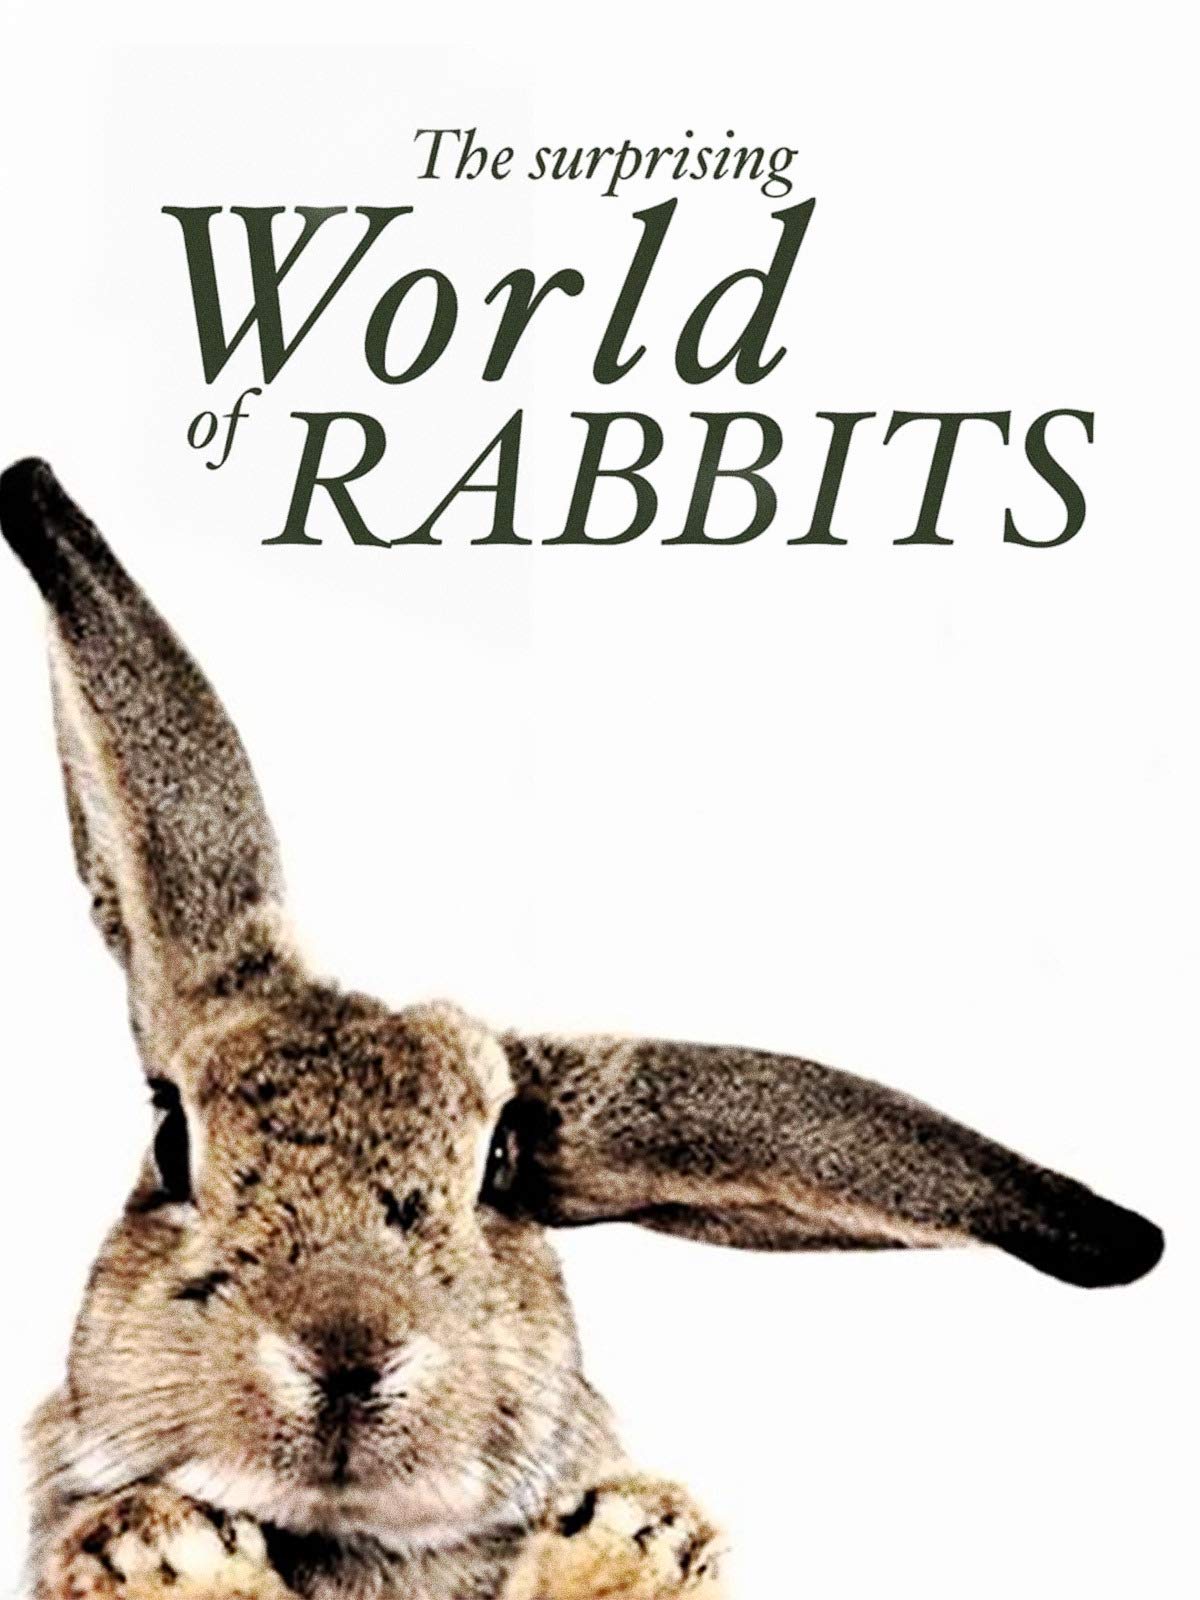 Caratula de THE SURPRISING WORLD OF RABBITS (El superpoder de los conejos) 